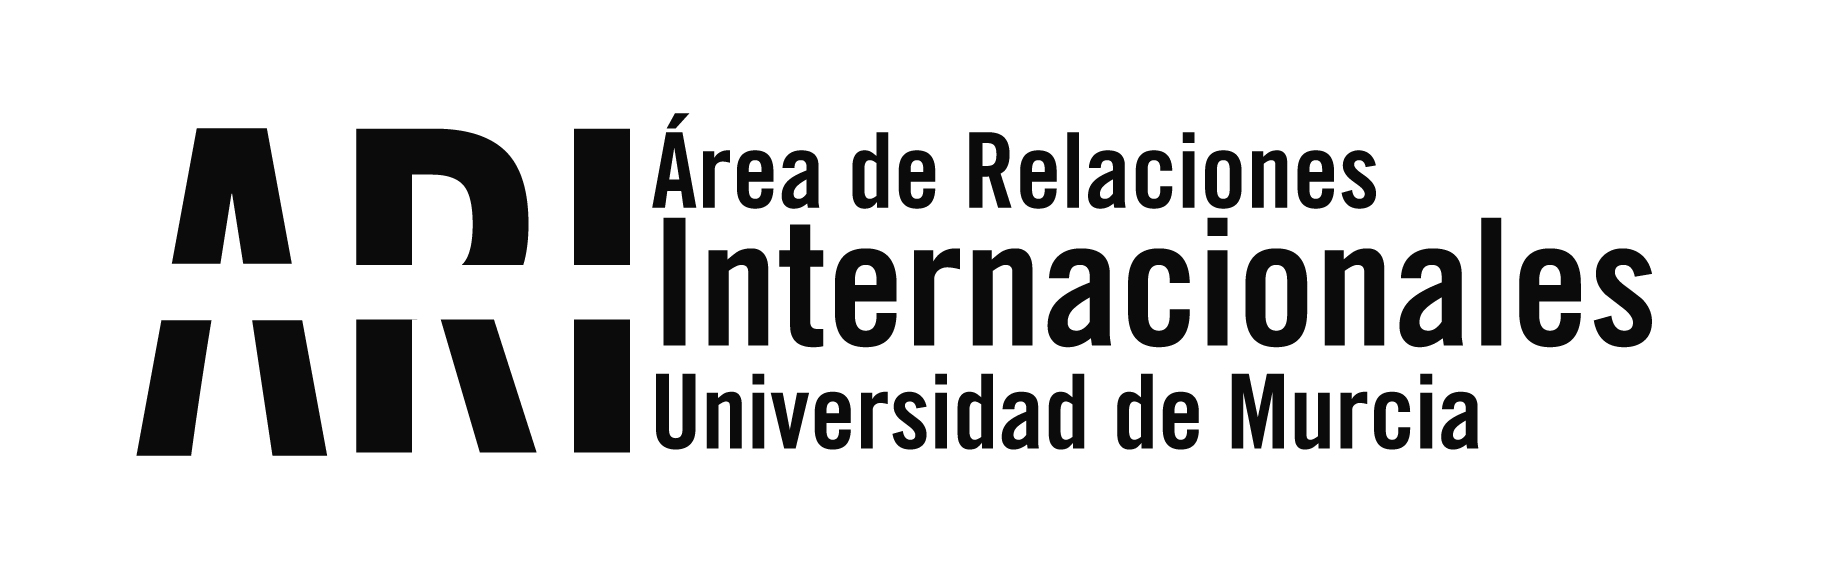 La ciudad de Córdoba - Argentina - recibe a los estudiantes ILA de la Universidad de Murcia - Área de Relaciones Internacionales